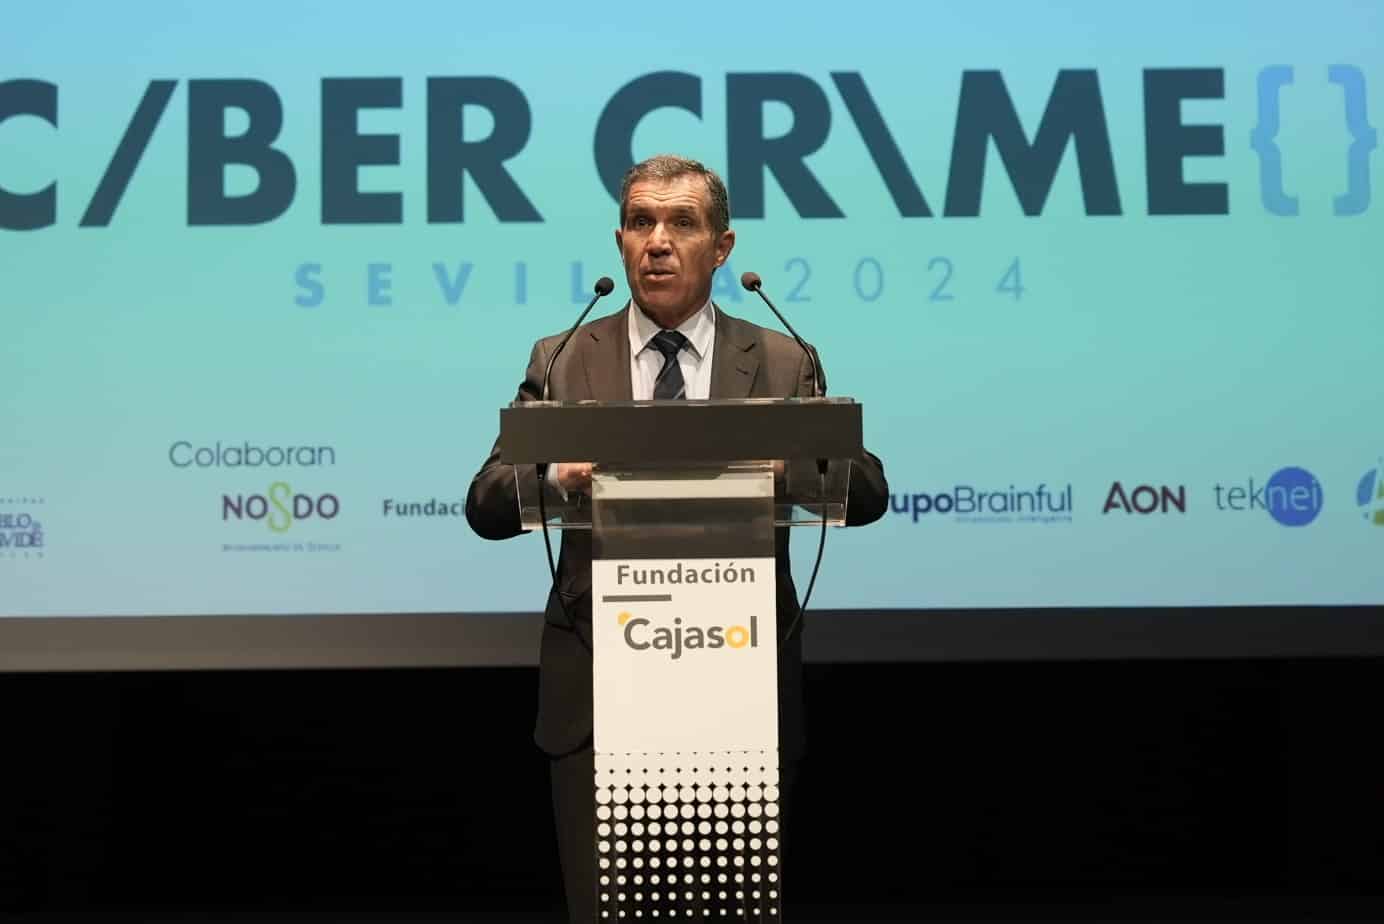 Antonio Pulido y Félix Bolaños inauguran CyberCrime Sevilla, Congreso Internacional sobre Ciberdelincuencia en Sevilla